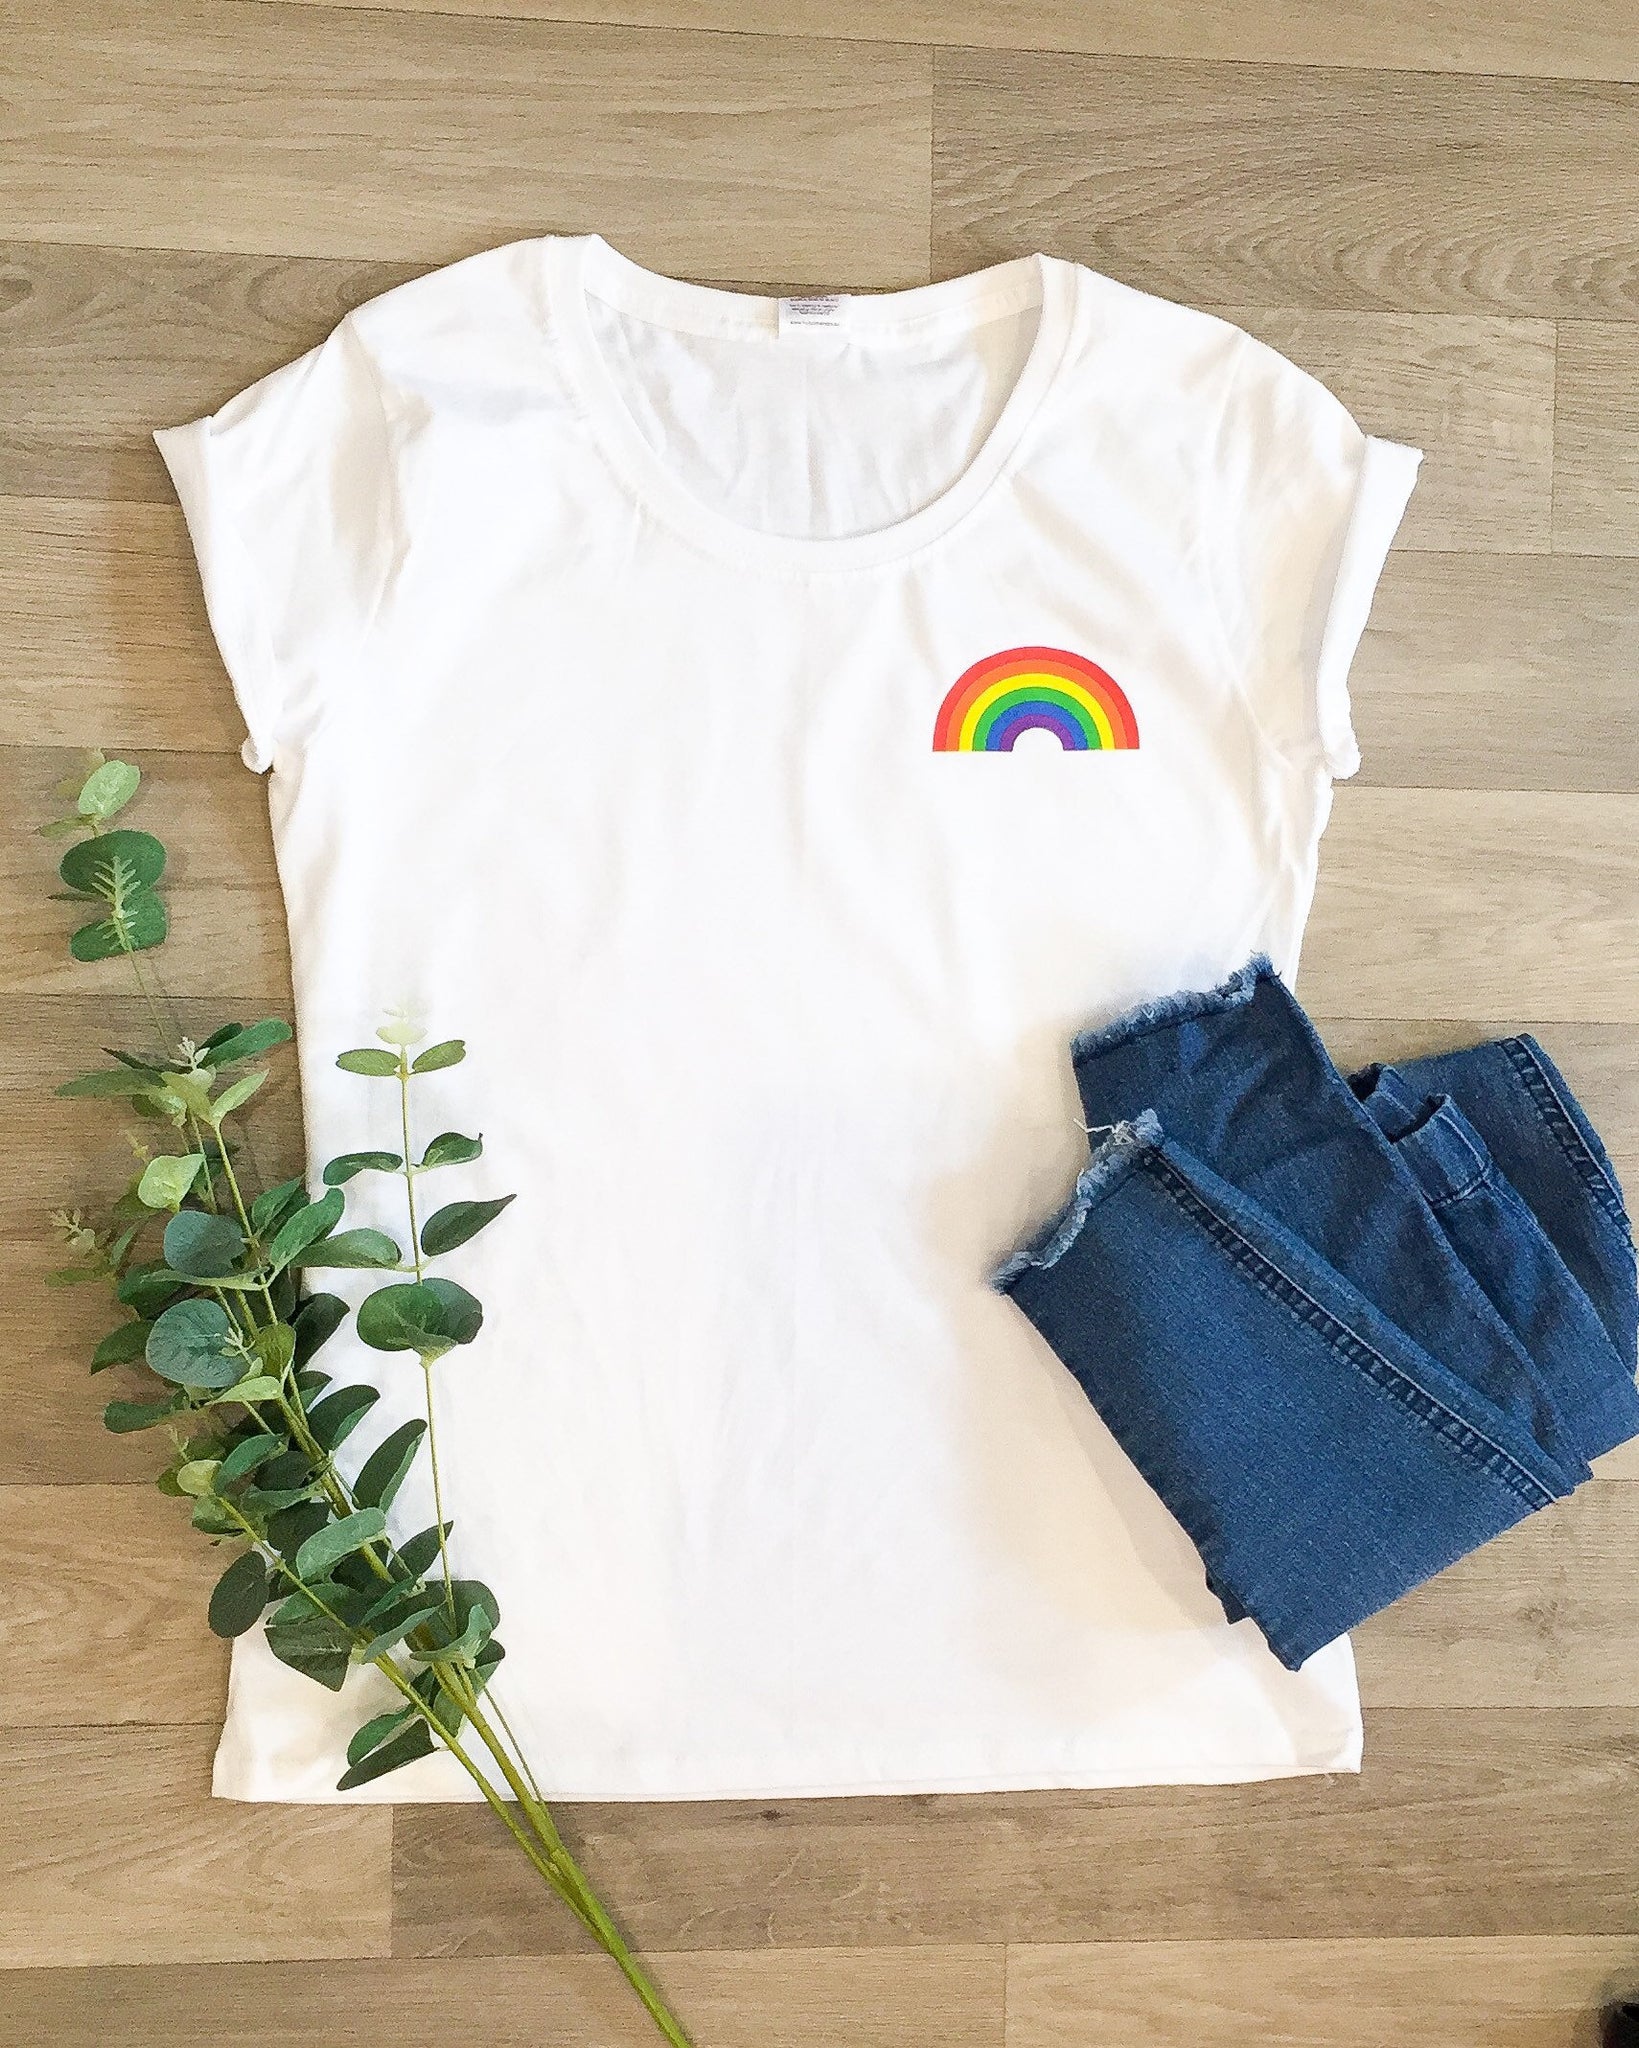 Rainbow women’s t shirt